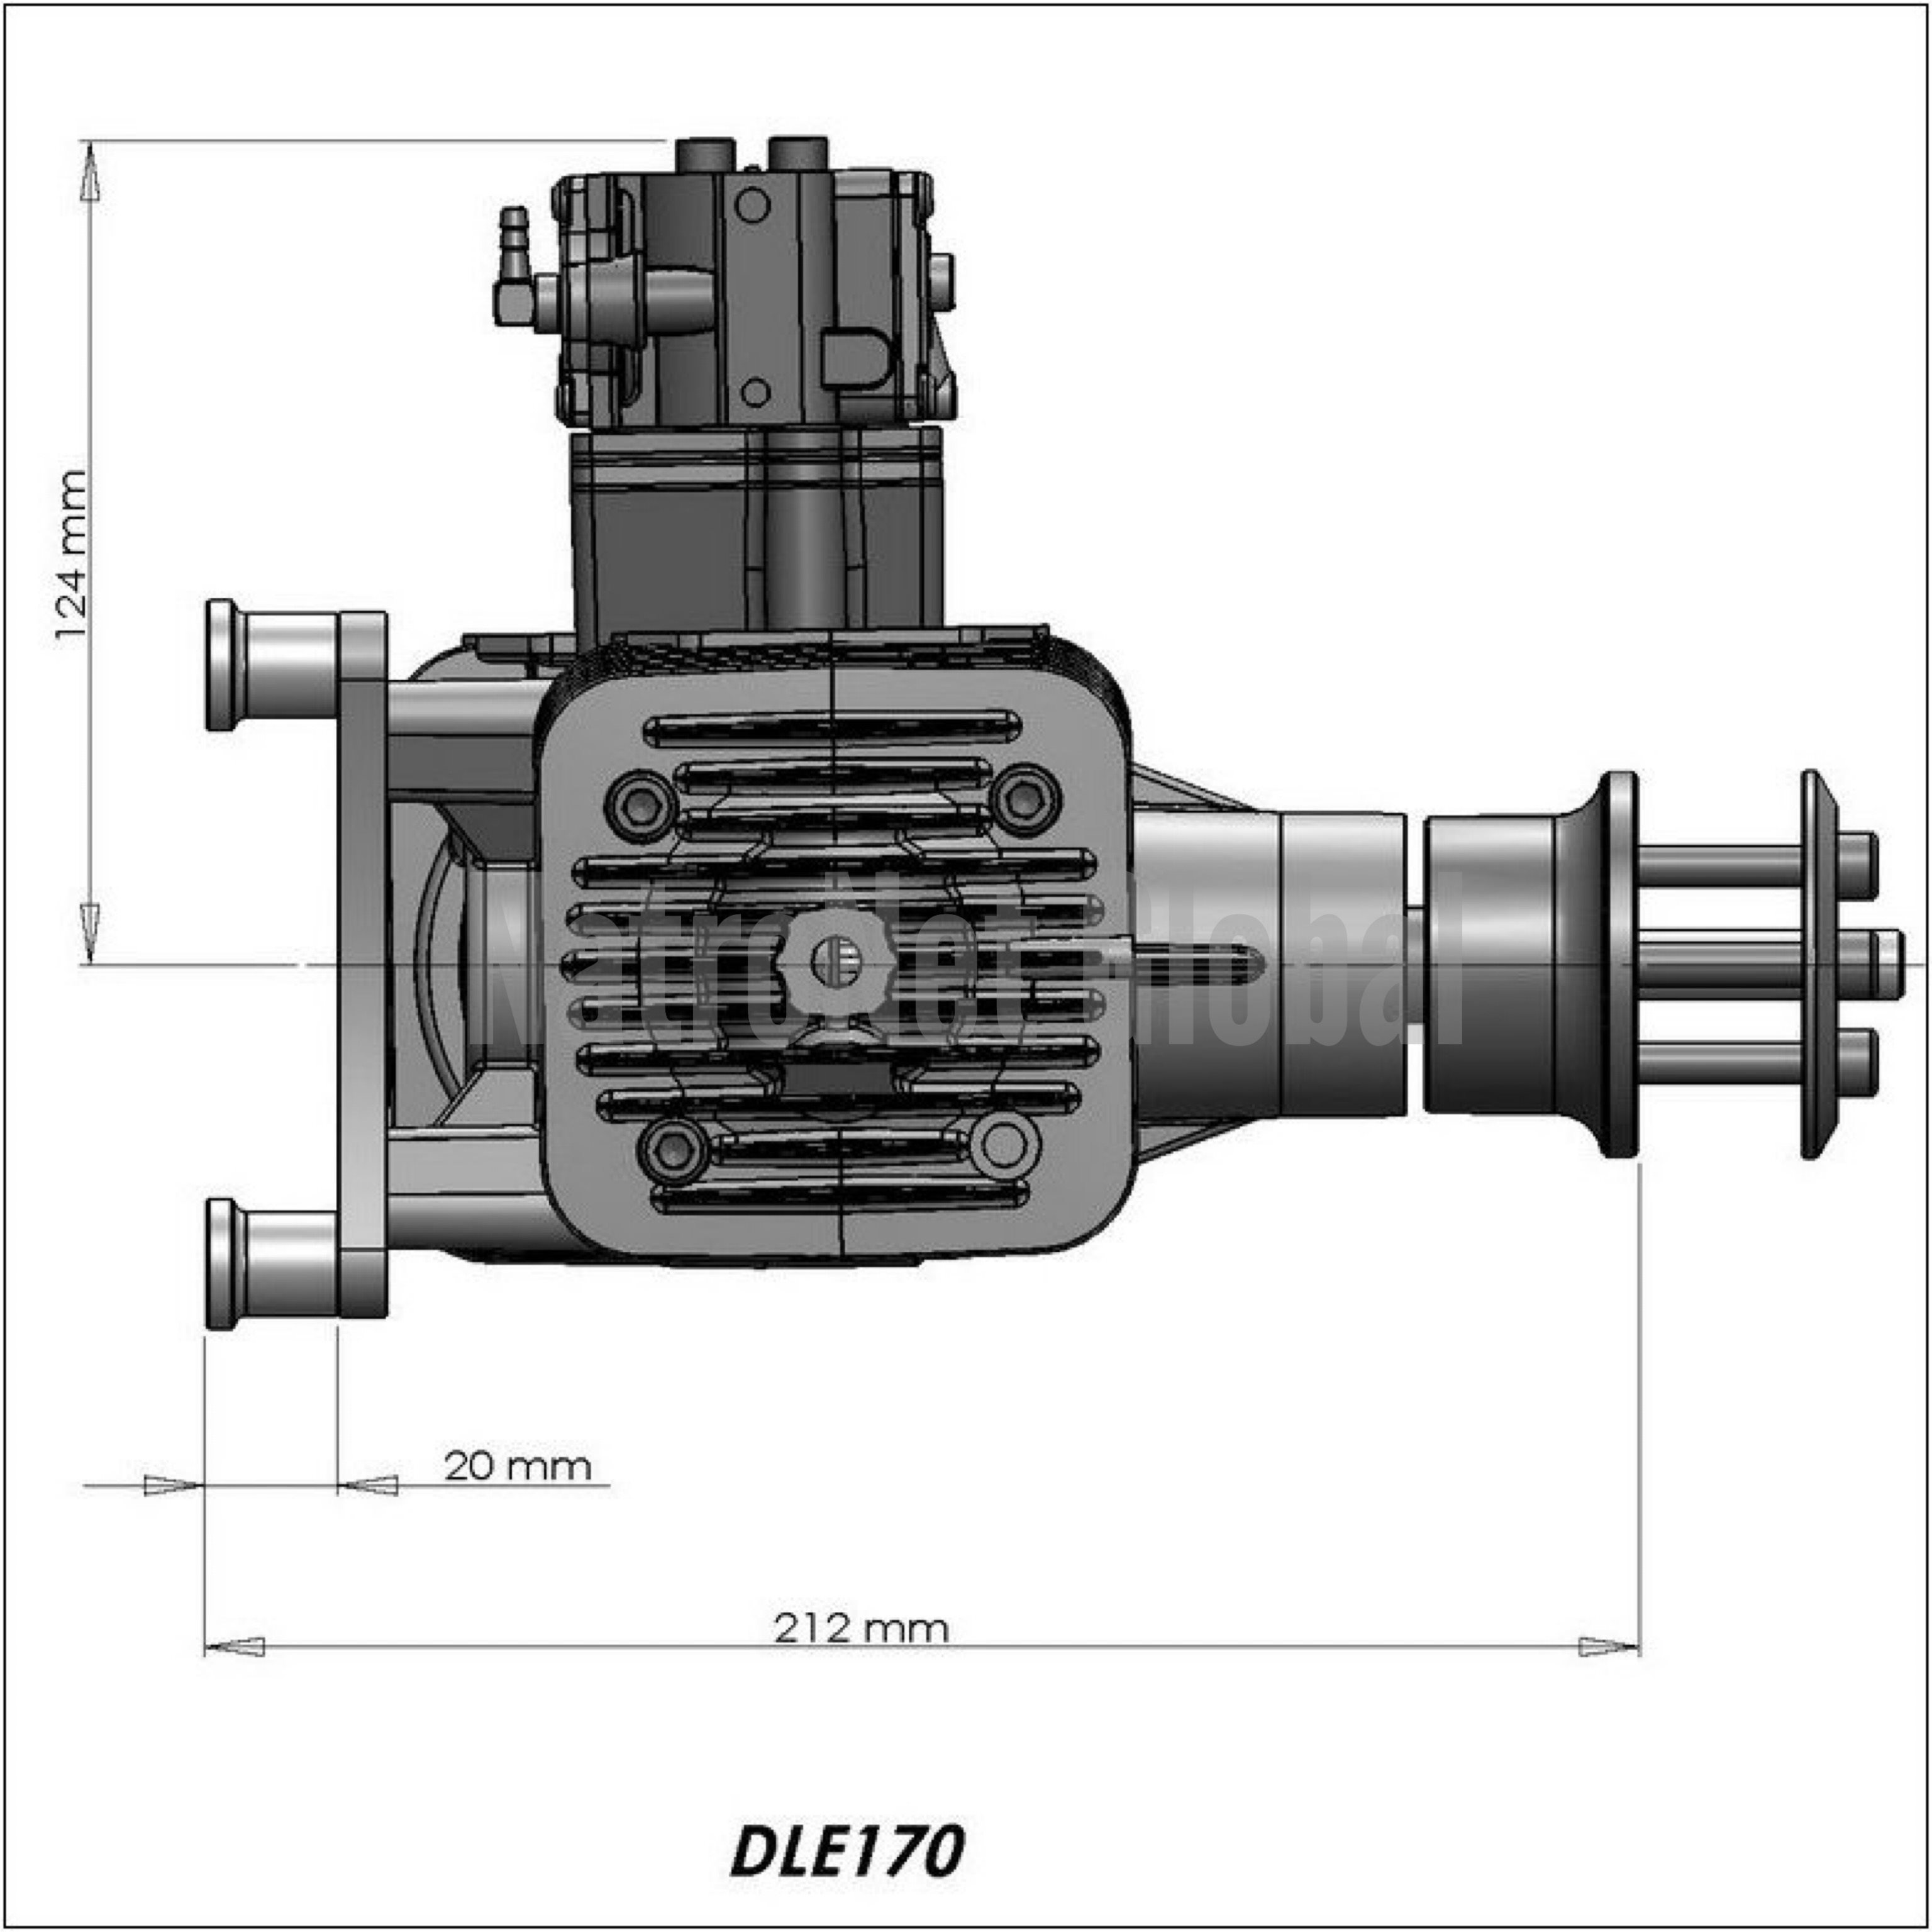 DL-170™ Benzinli Prefosyonel Uçak Motoru (Model Uçak Motorları)